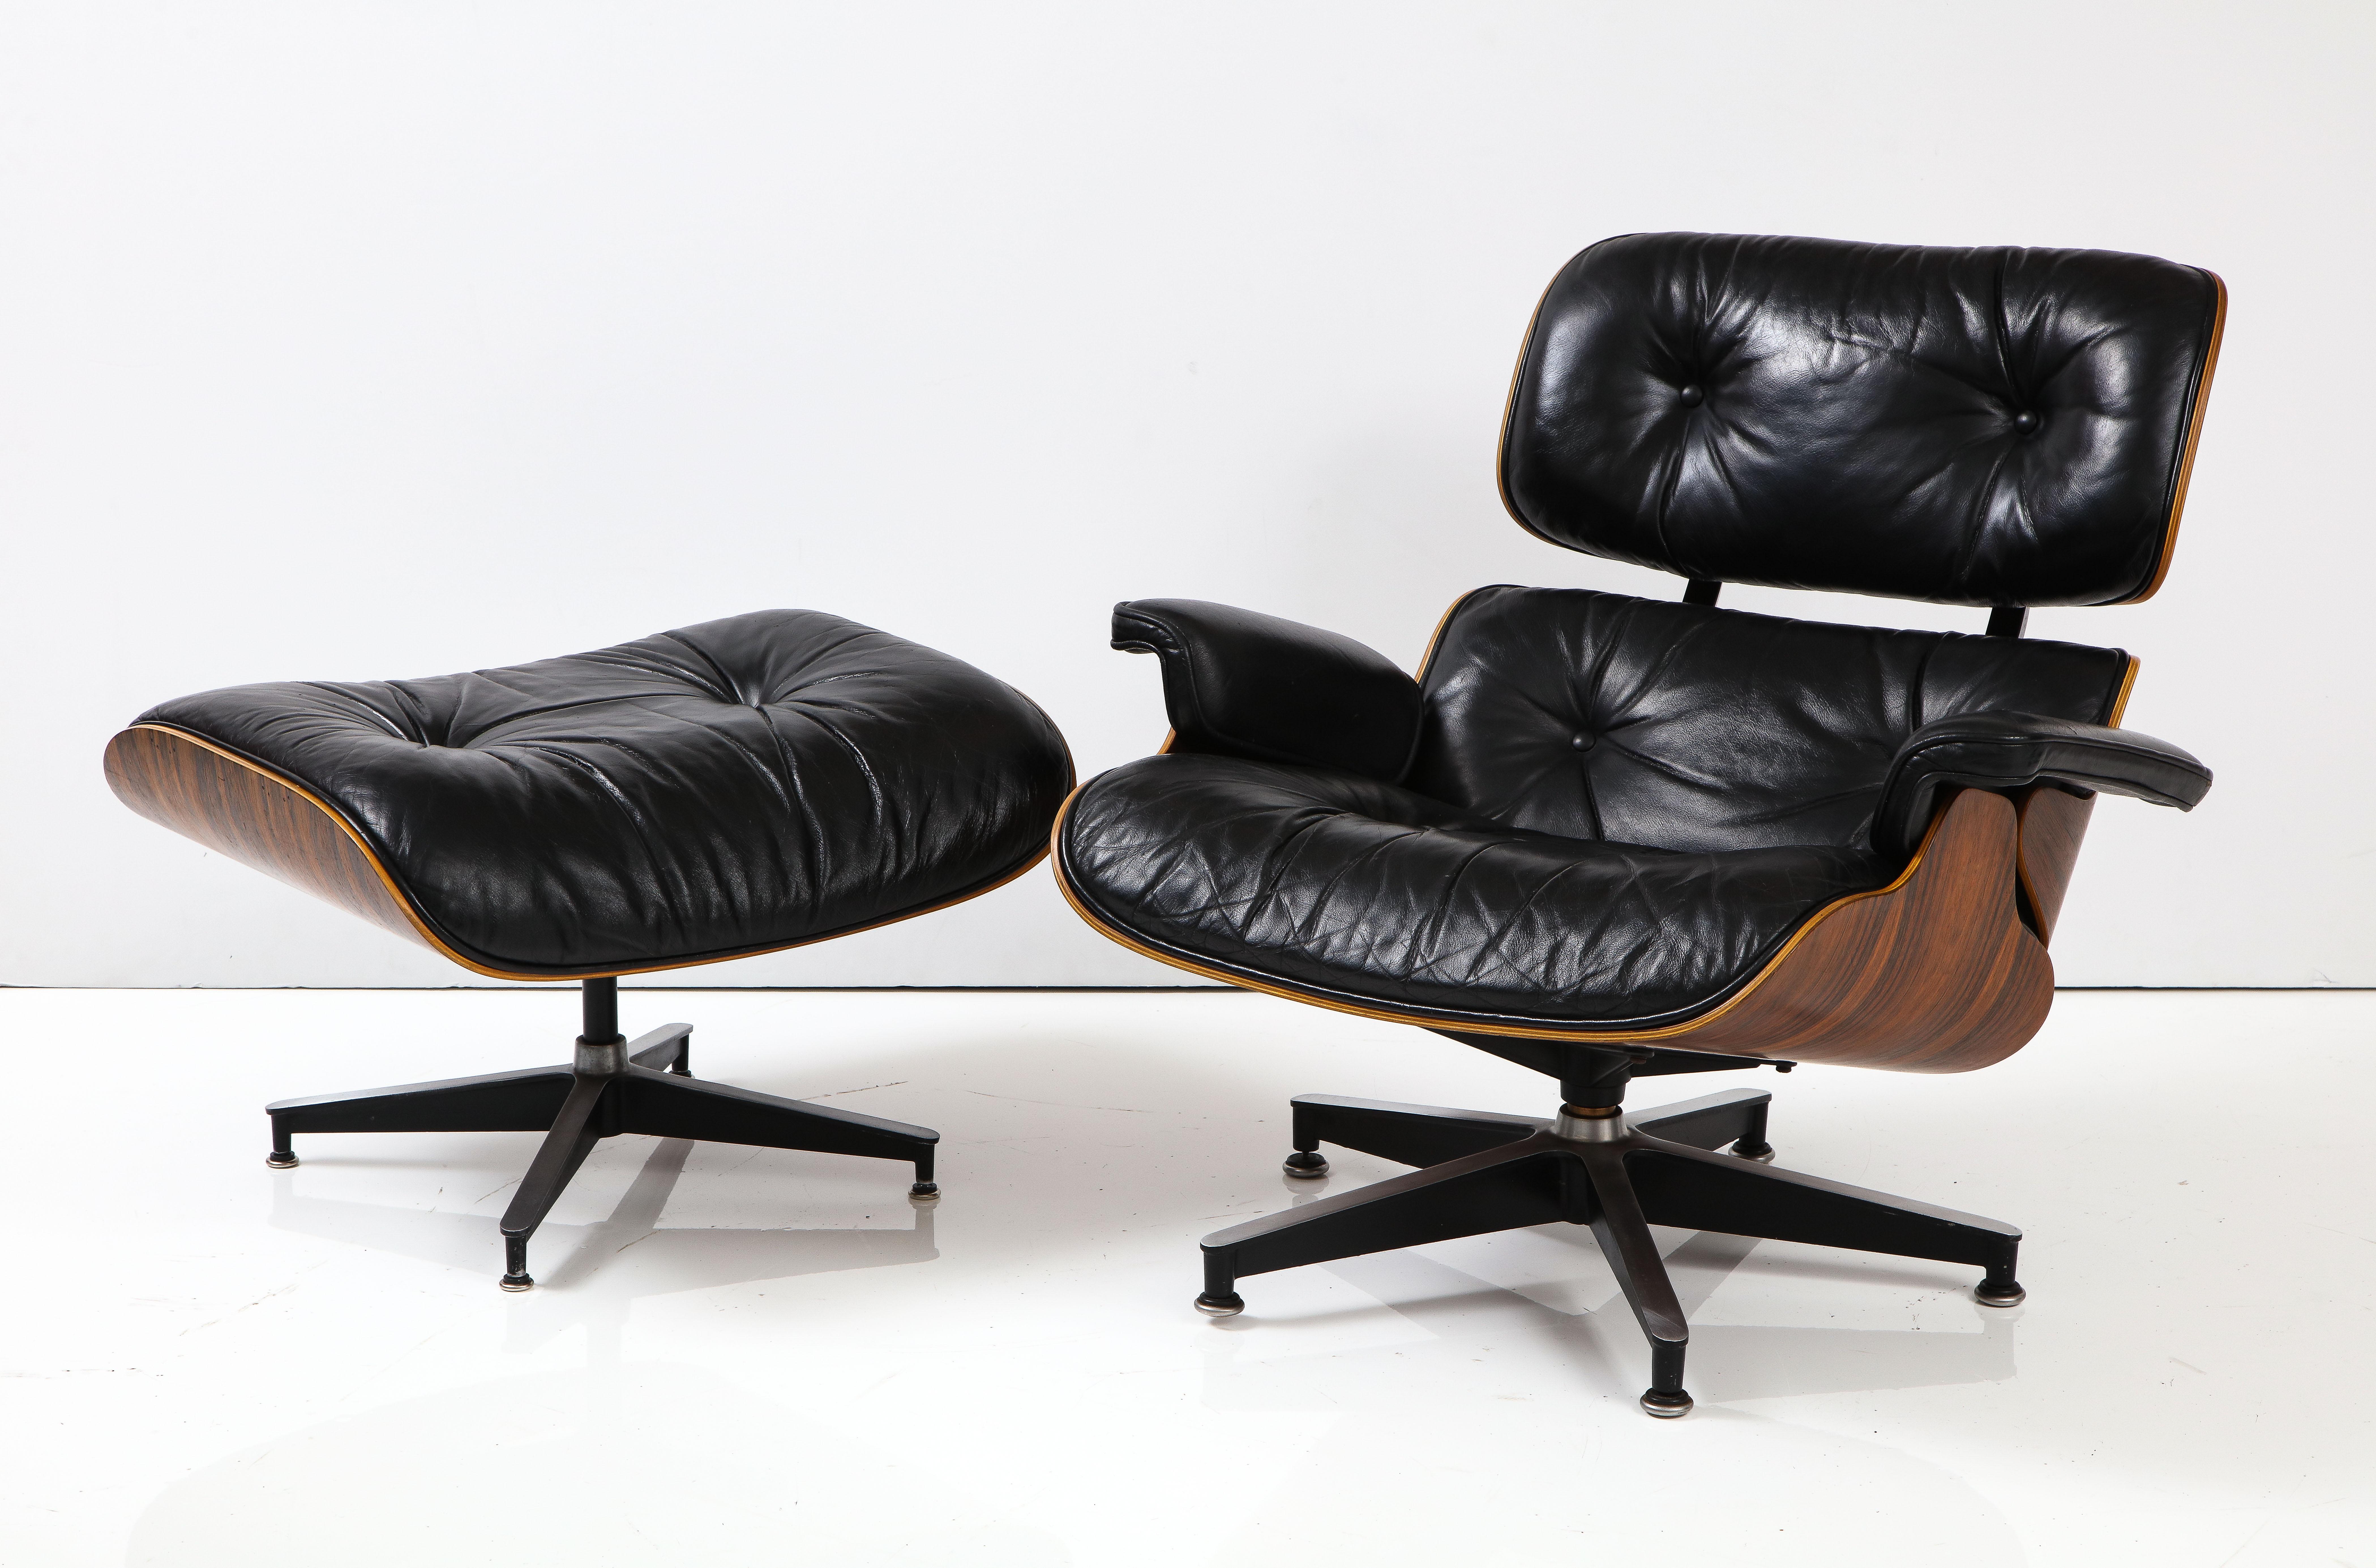 Superbe chaise de salon et ottoman Eames en palissandre brésilien et cuir de Herman Miller, datant des années 1970, achetée au propriétaire d'origine qui l'a achetée en 1971, en état d'origine vintage avec quelques traces d'usure et de patine sur le